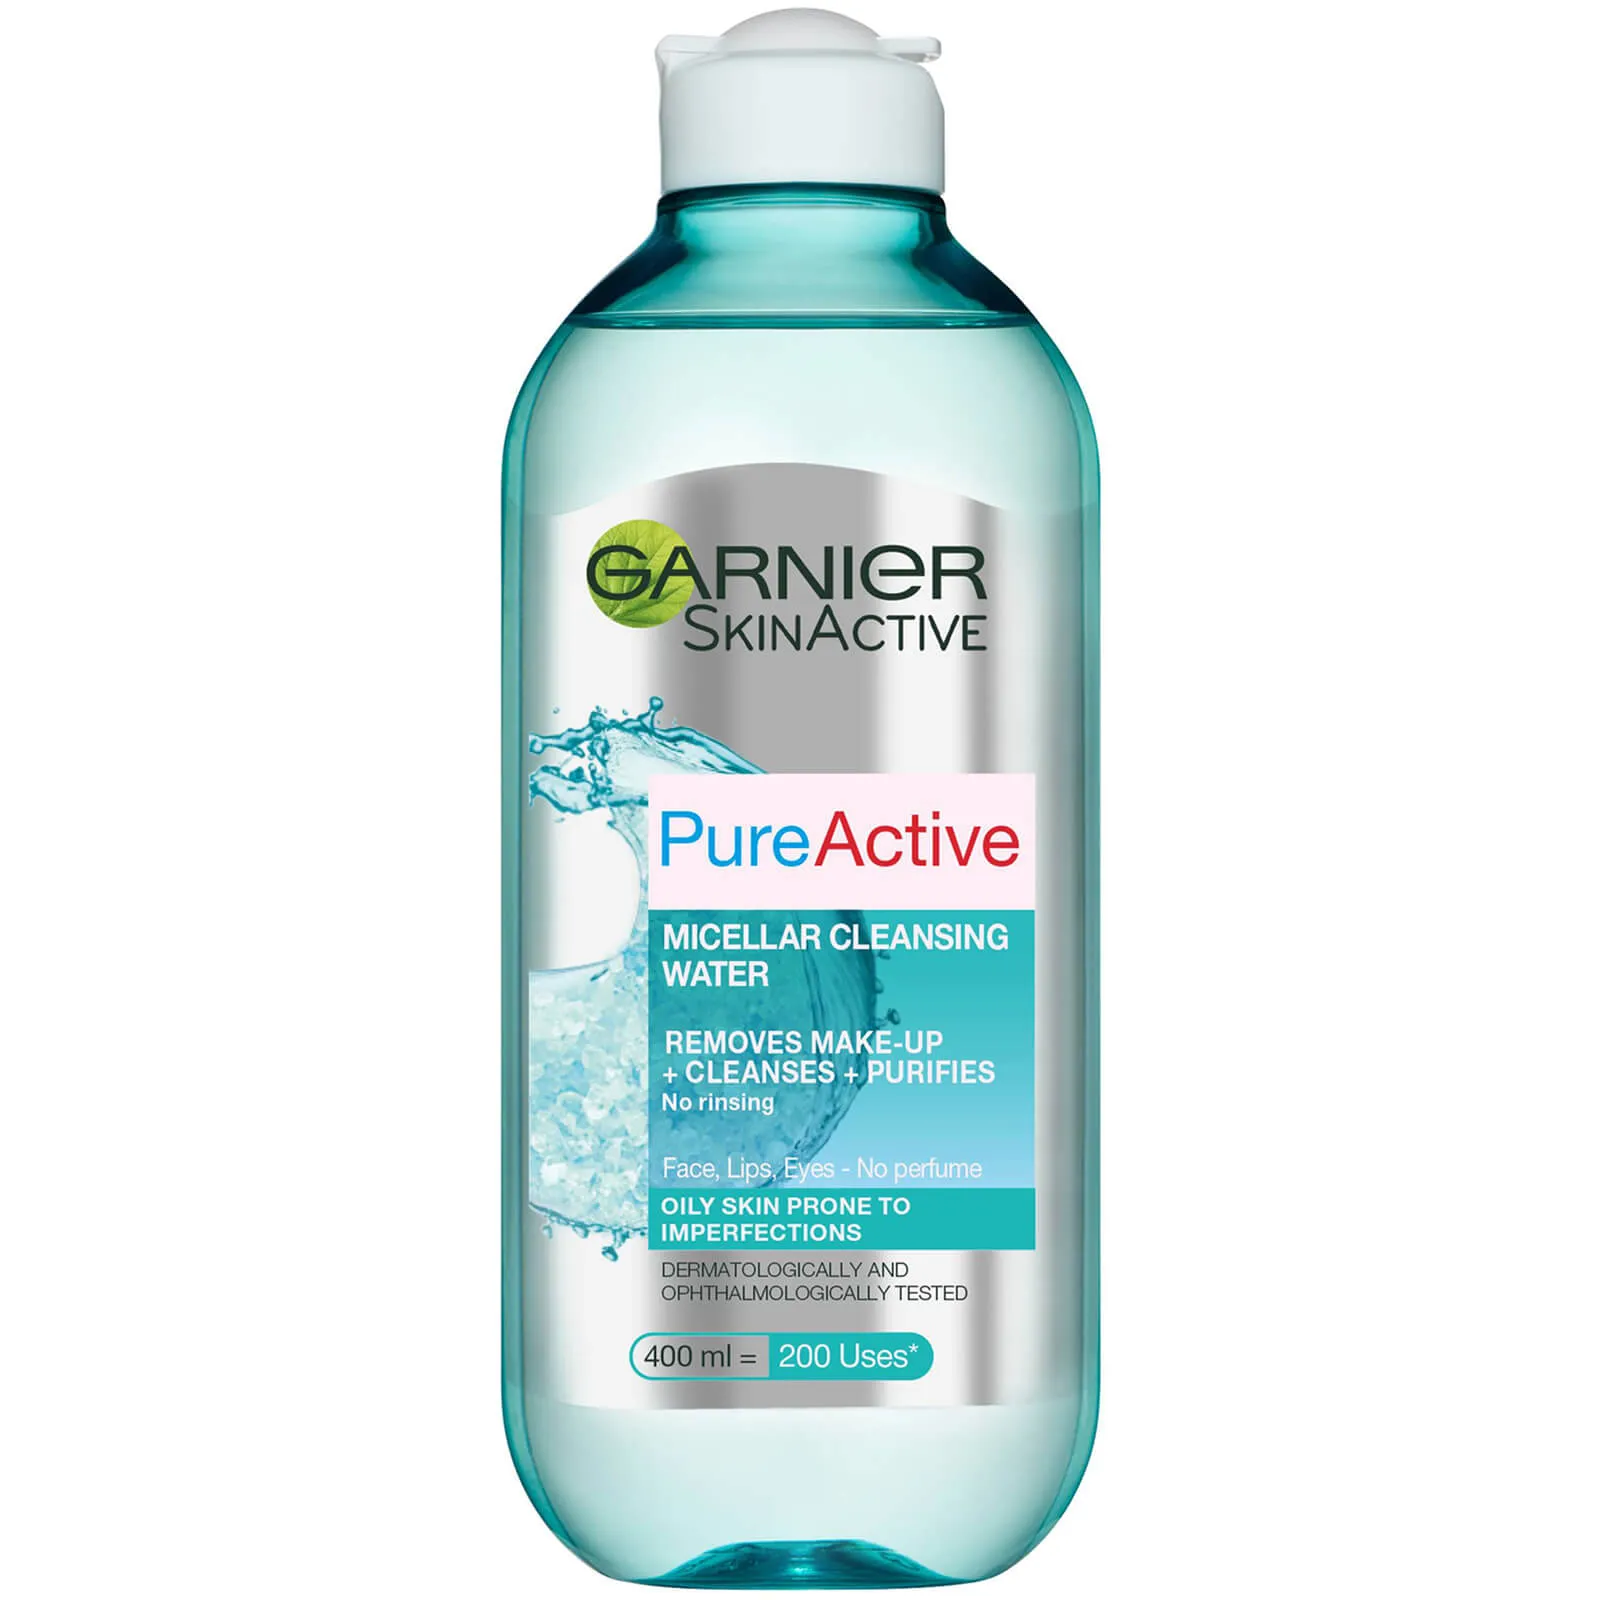  Pure Active acqua micellare detergente (400 ml)